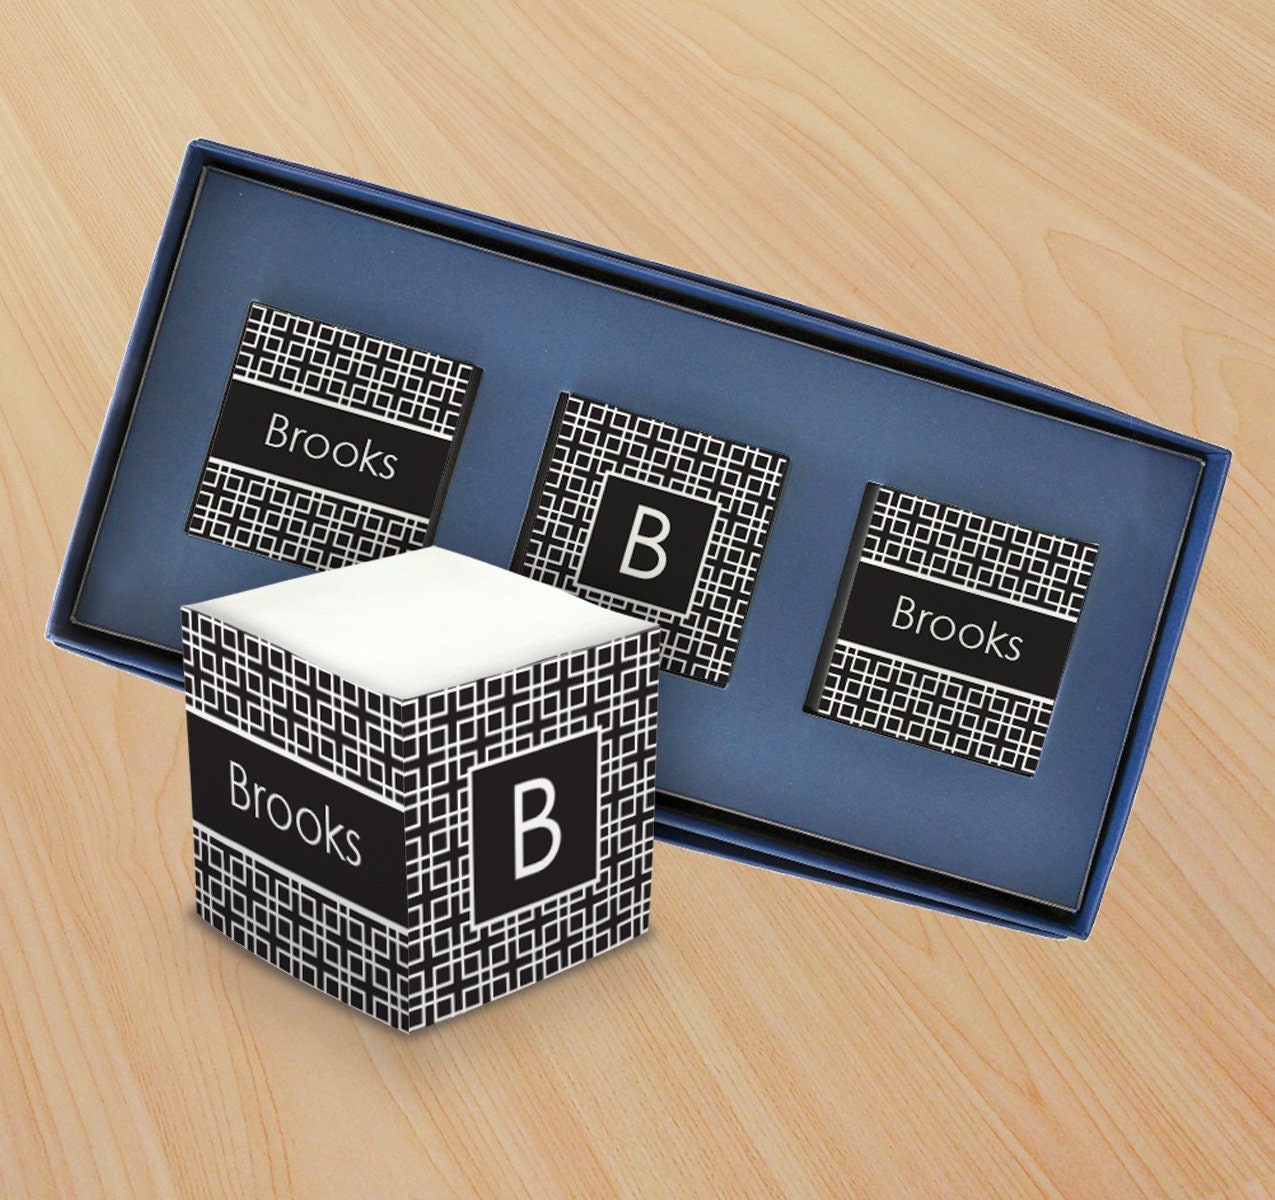 Post it Memo Cube Pad Formato Mini Legami - Gadget